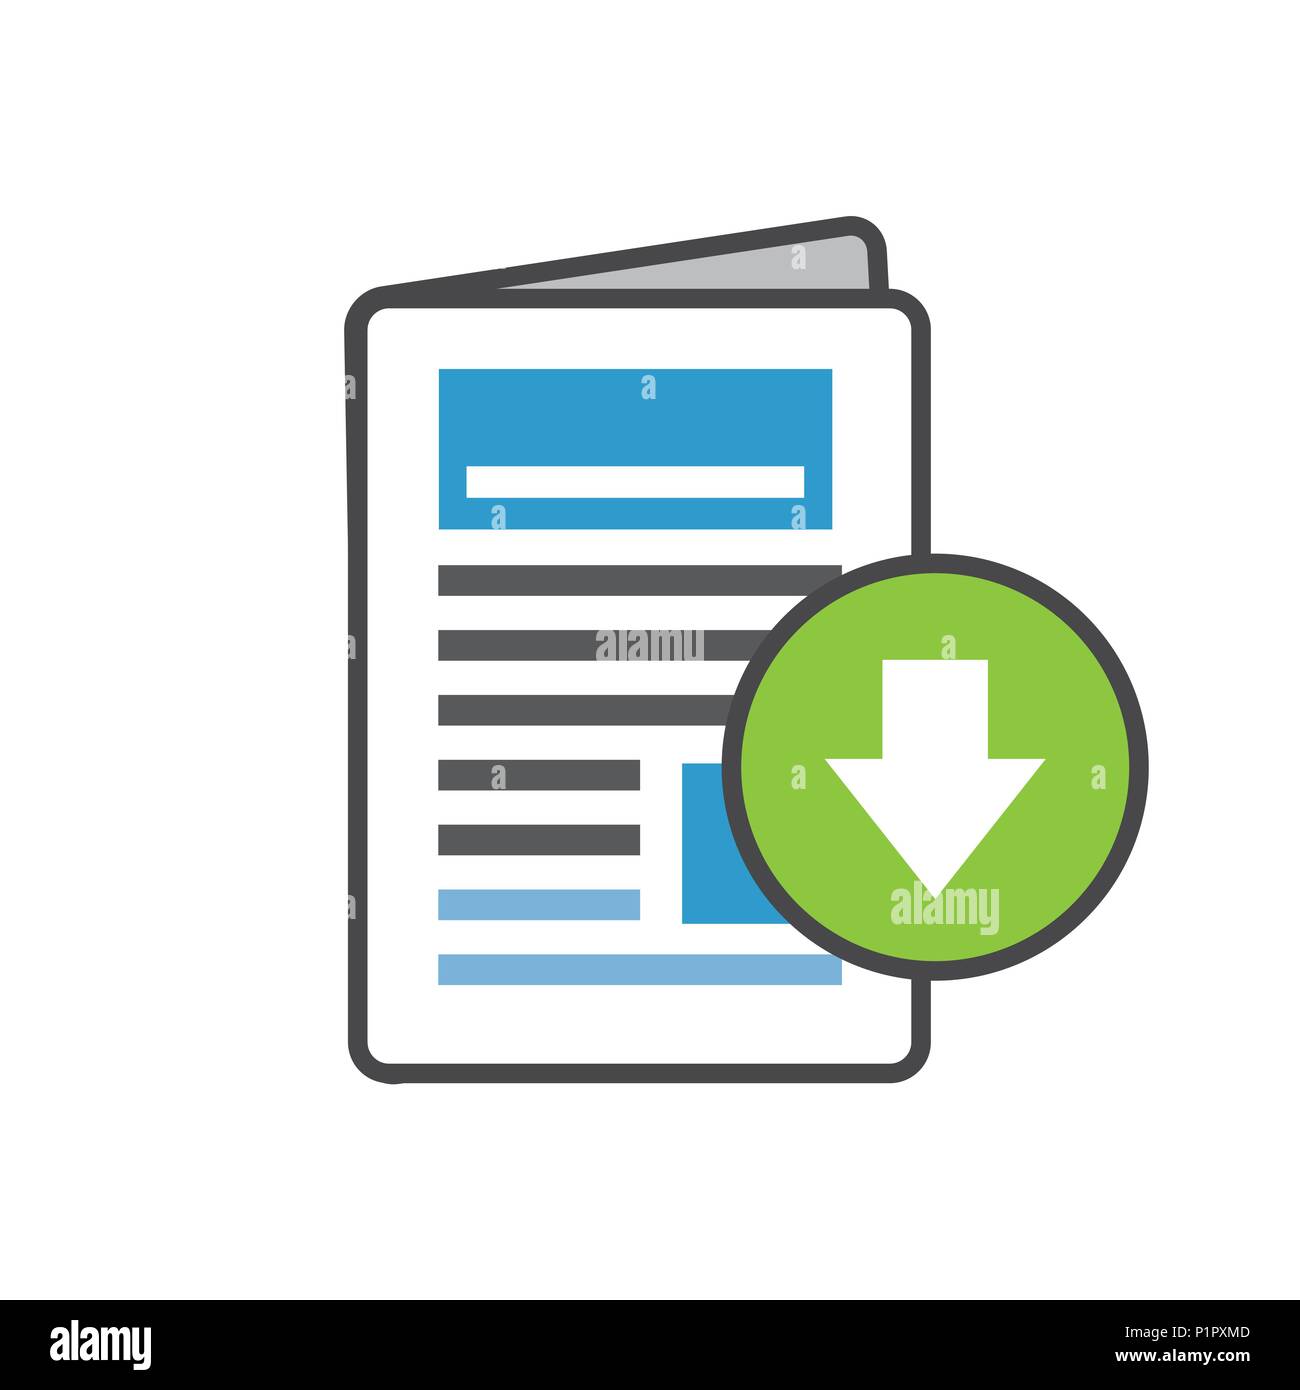 White Paper o Ebook CTA w coperchio e pulsante Scarica gratuitamente il download digitale - Chiamata per azione di marketing Illustrazione Vettoriale